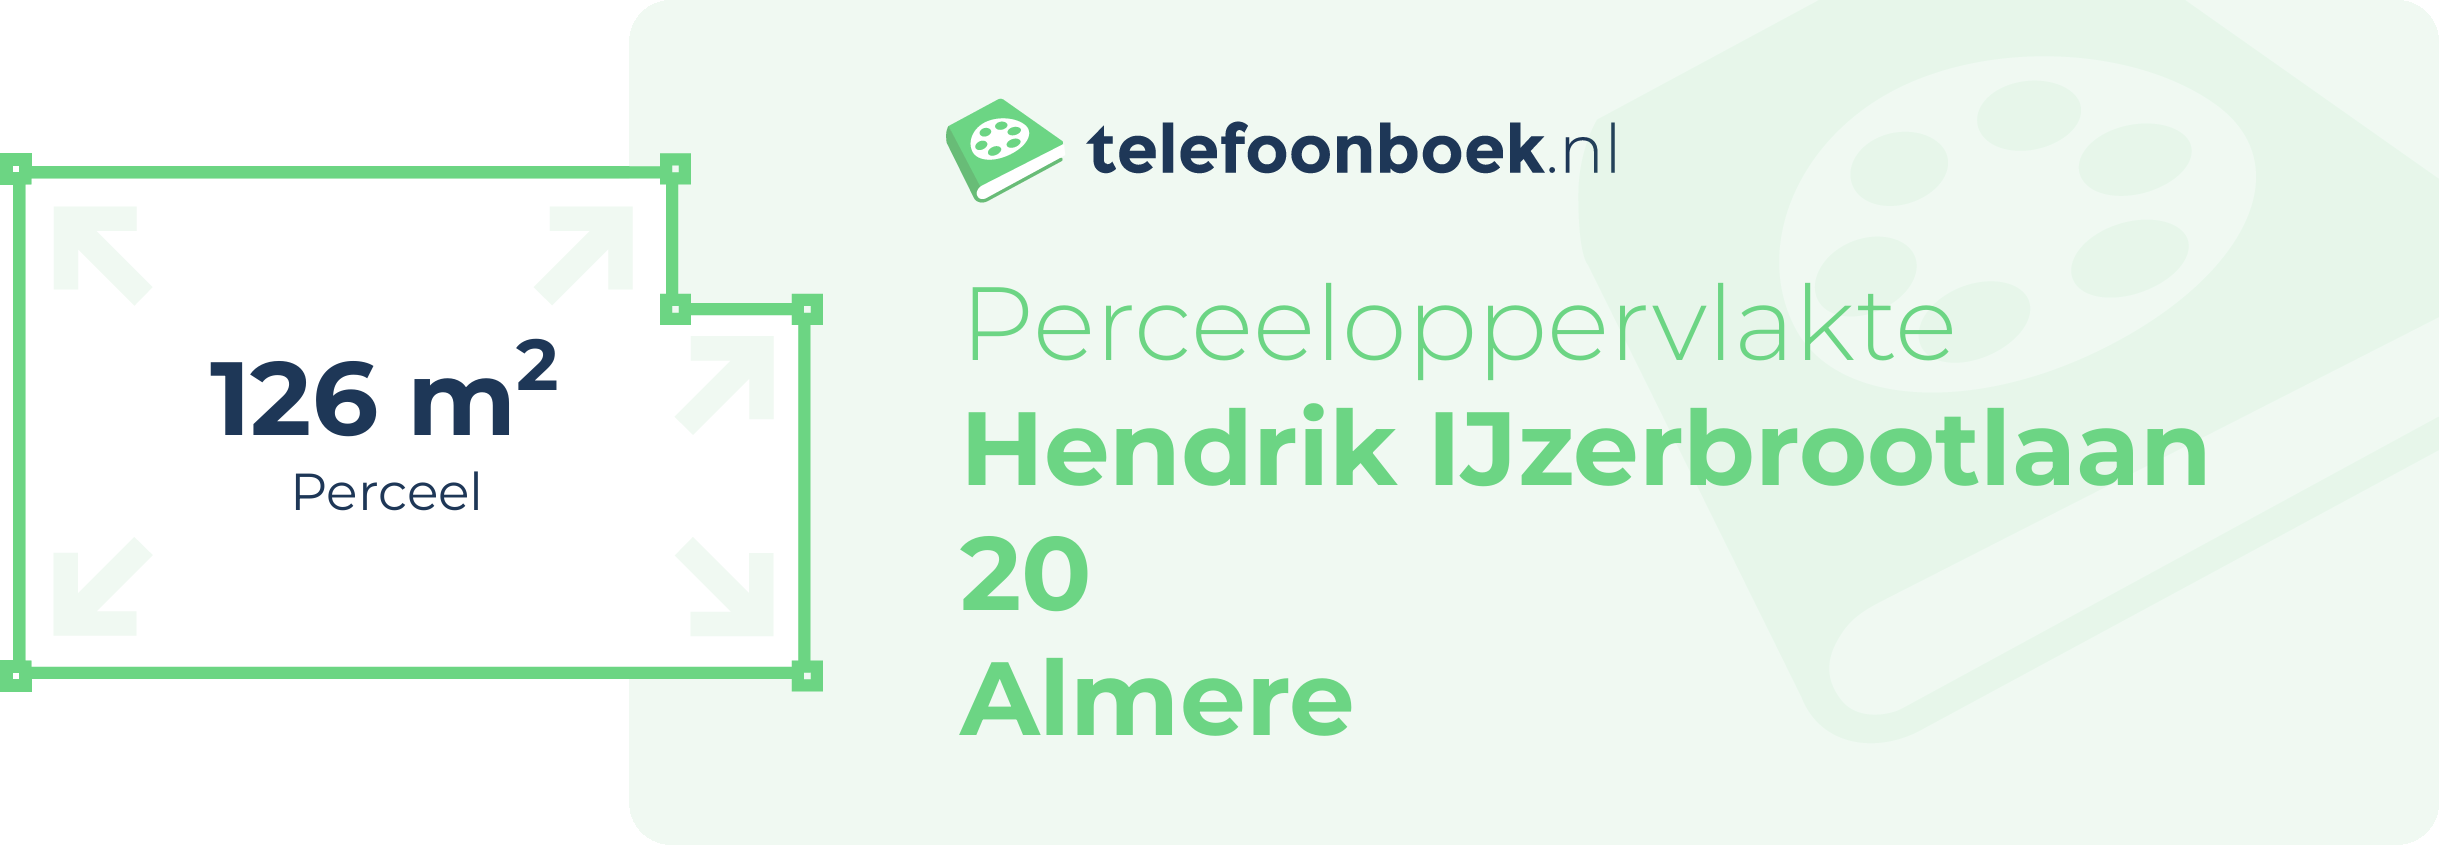 Perceeloppervlakte Hendrik IJzerbrootlaan 20 Almere